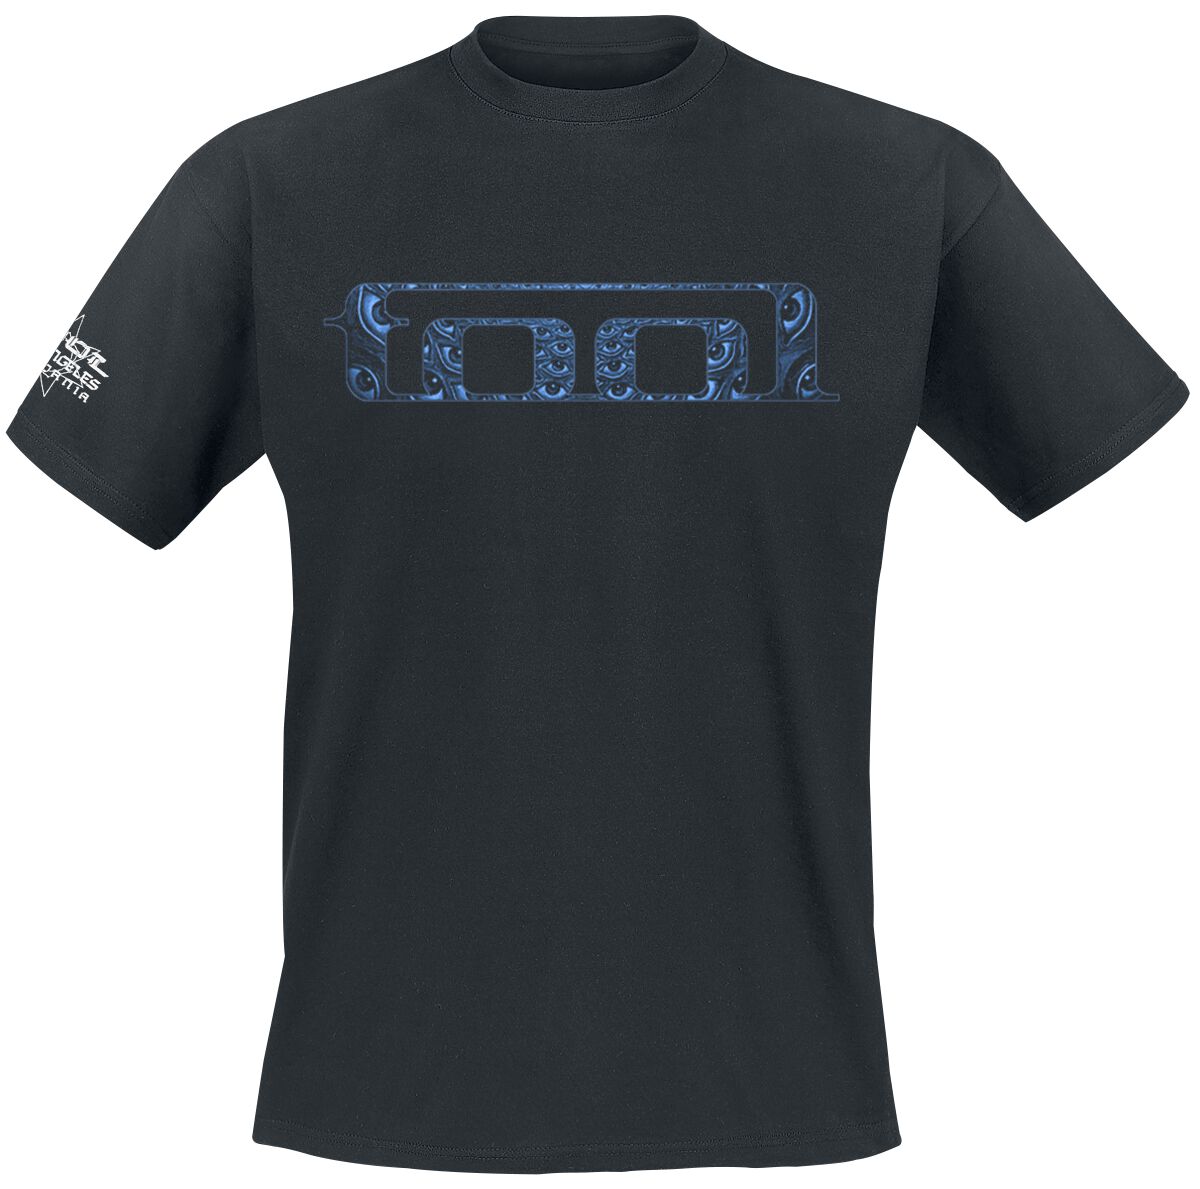 Tool T-Shirt - Blue Spectre - S bis XXL - für Männer - Größe XXL - schwarz  - Lizenziertes Merchandise!